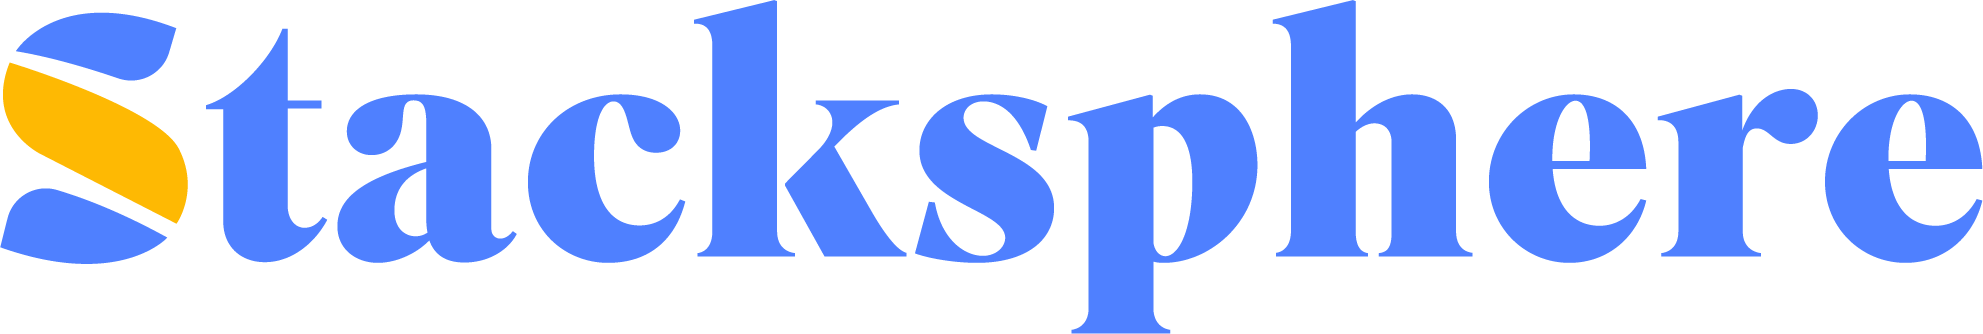 Stacksphere logo